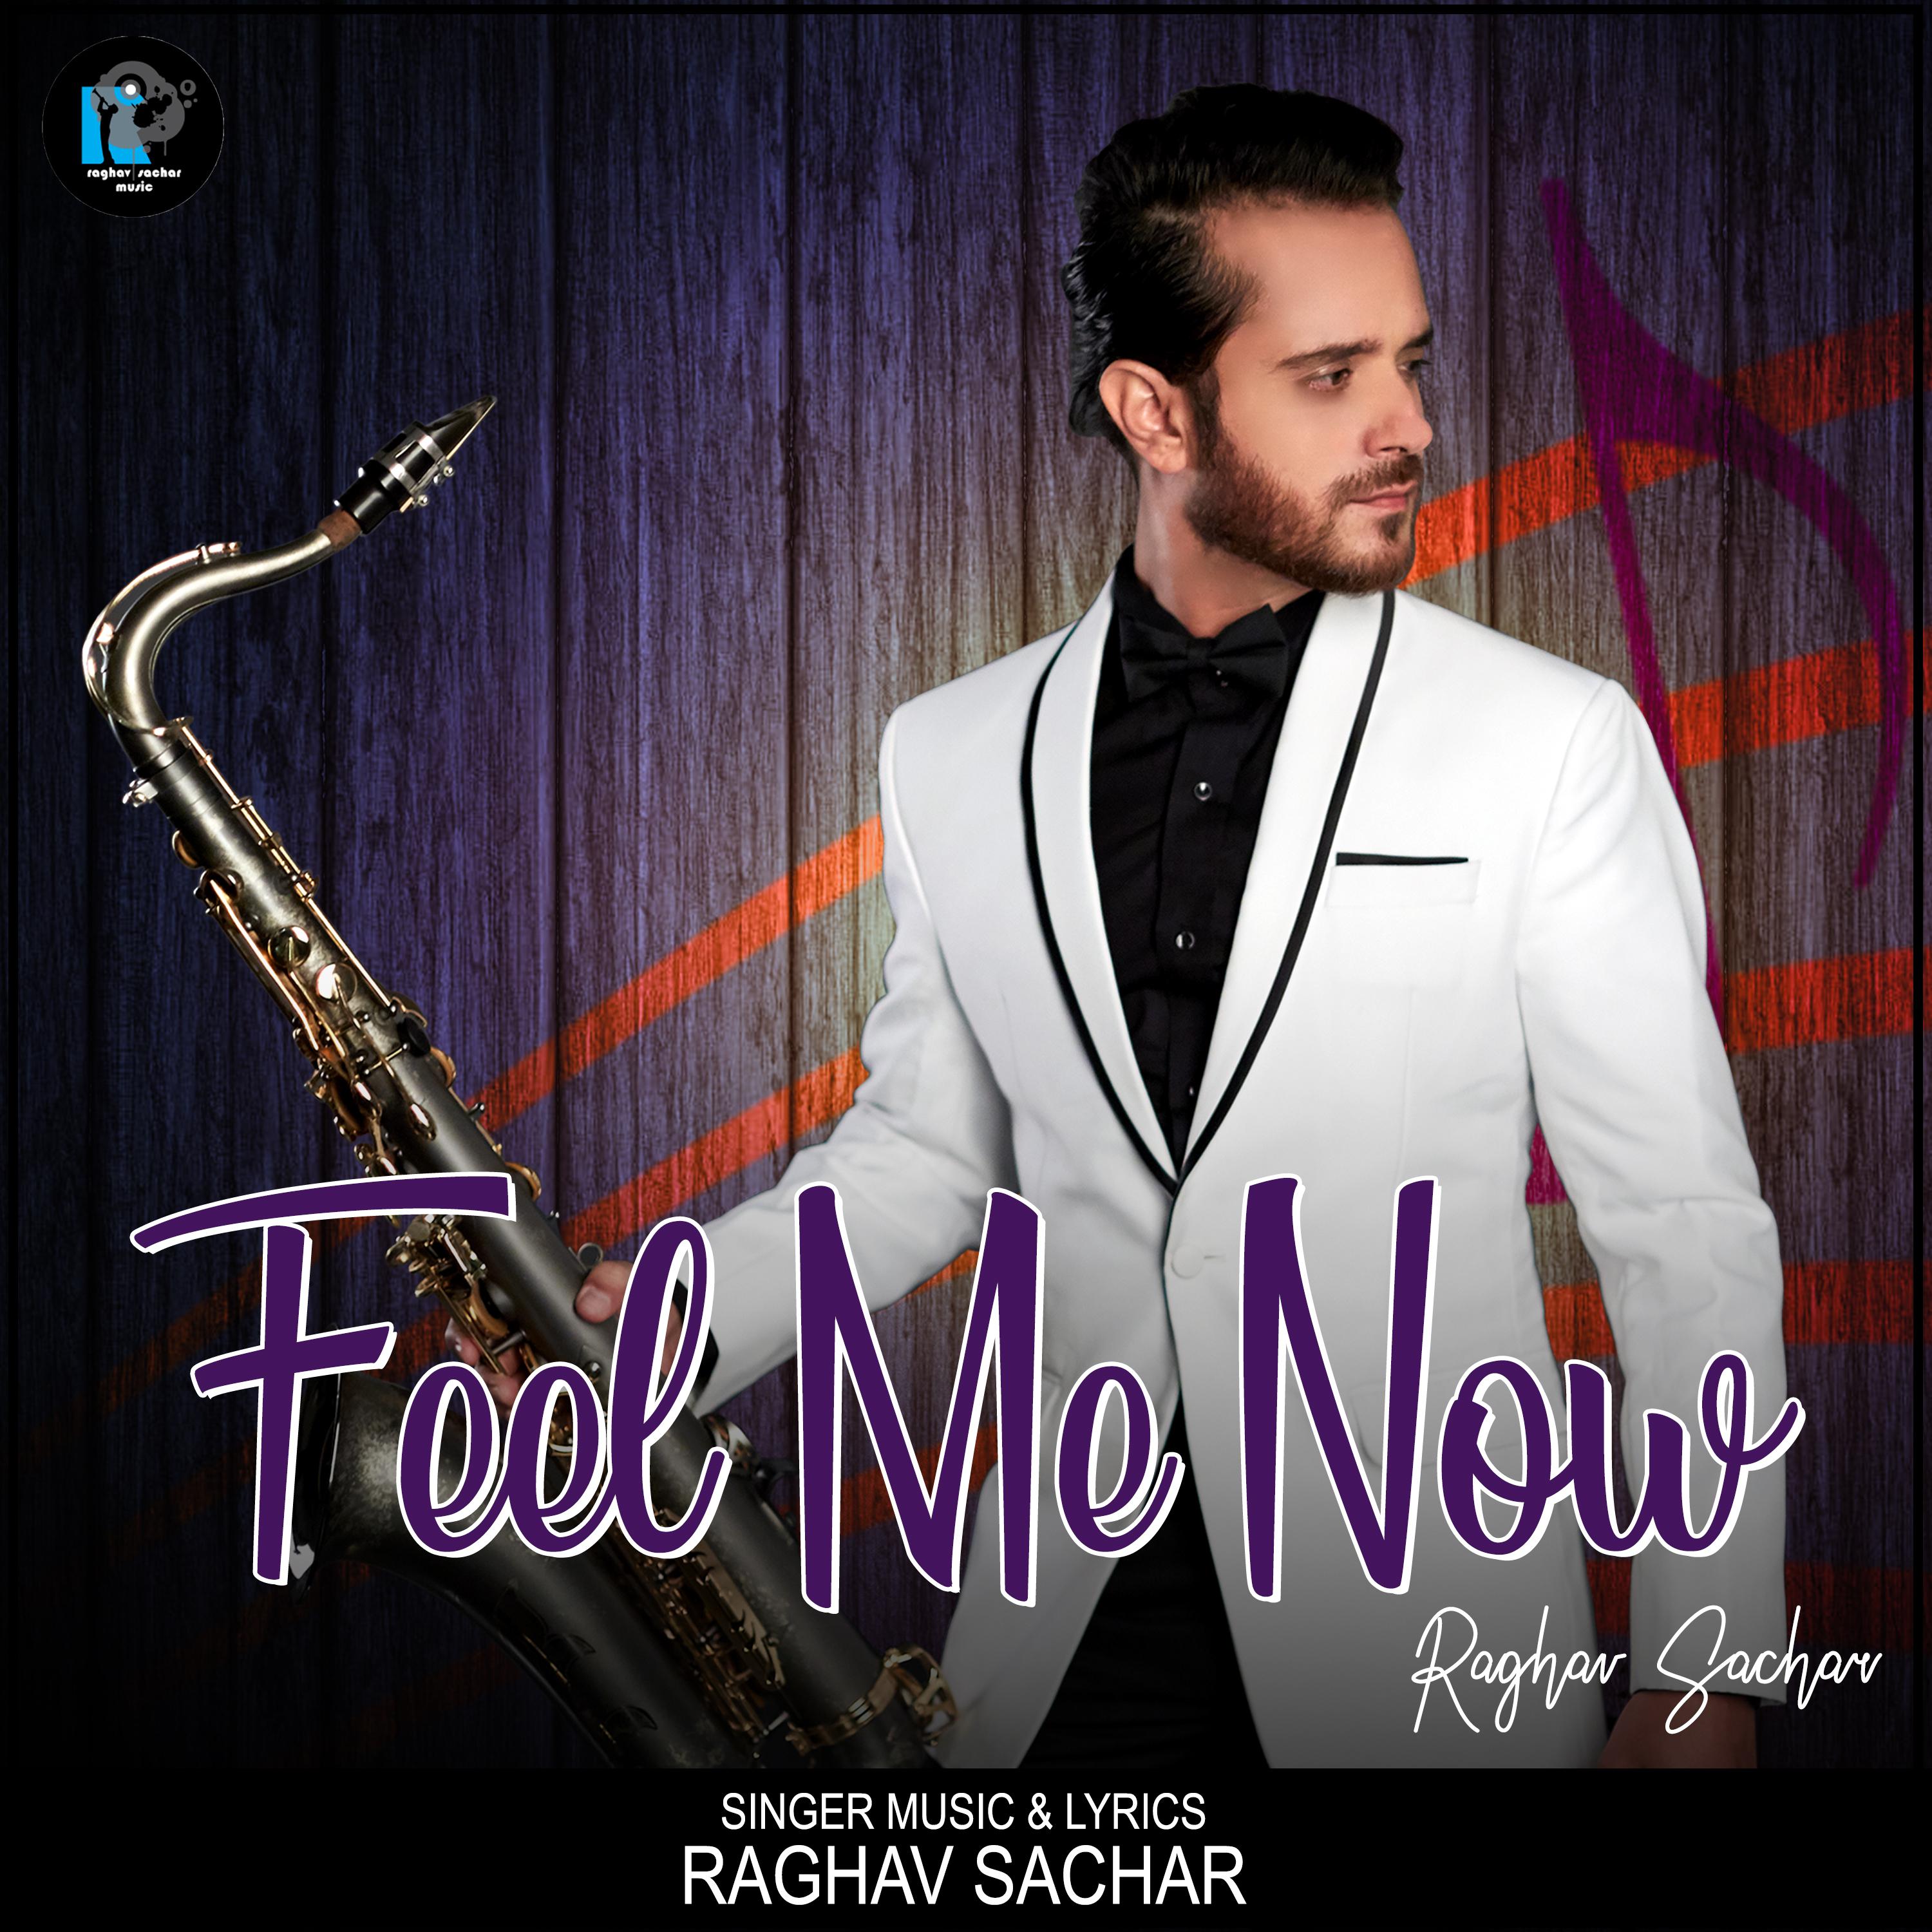 raghav sachar remix songs